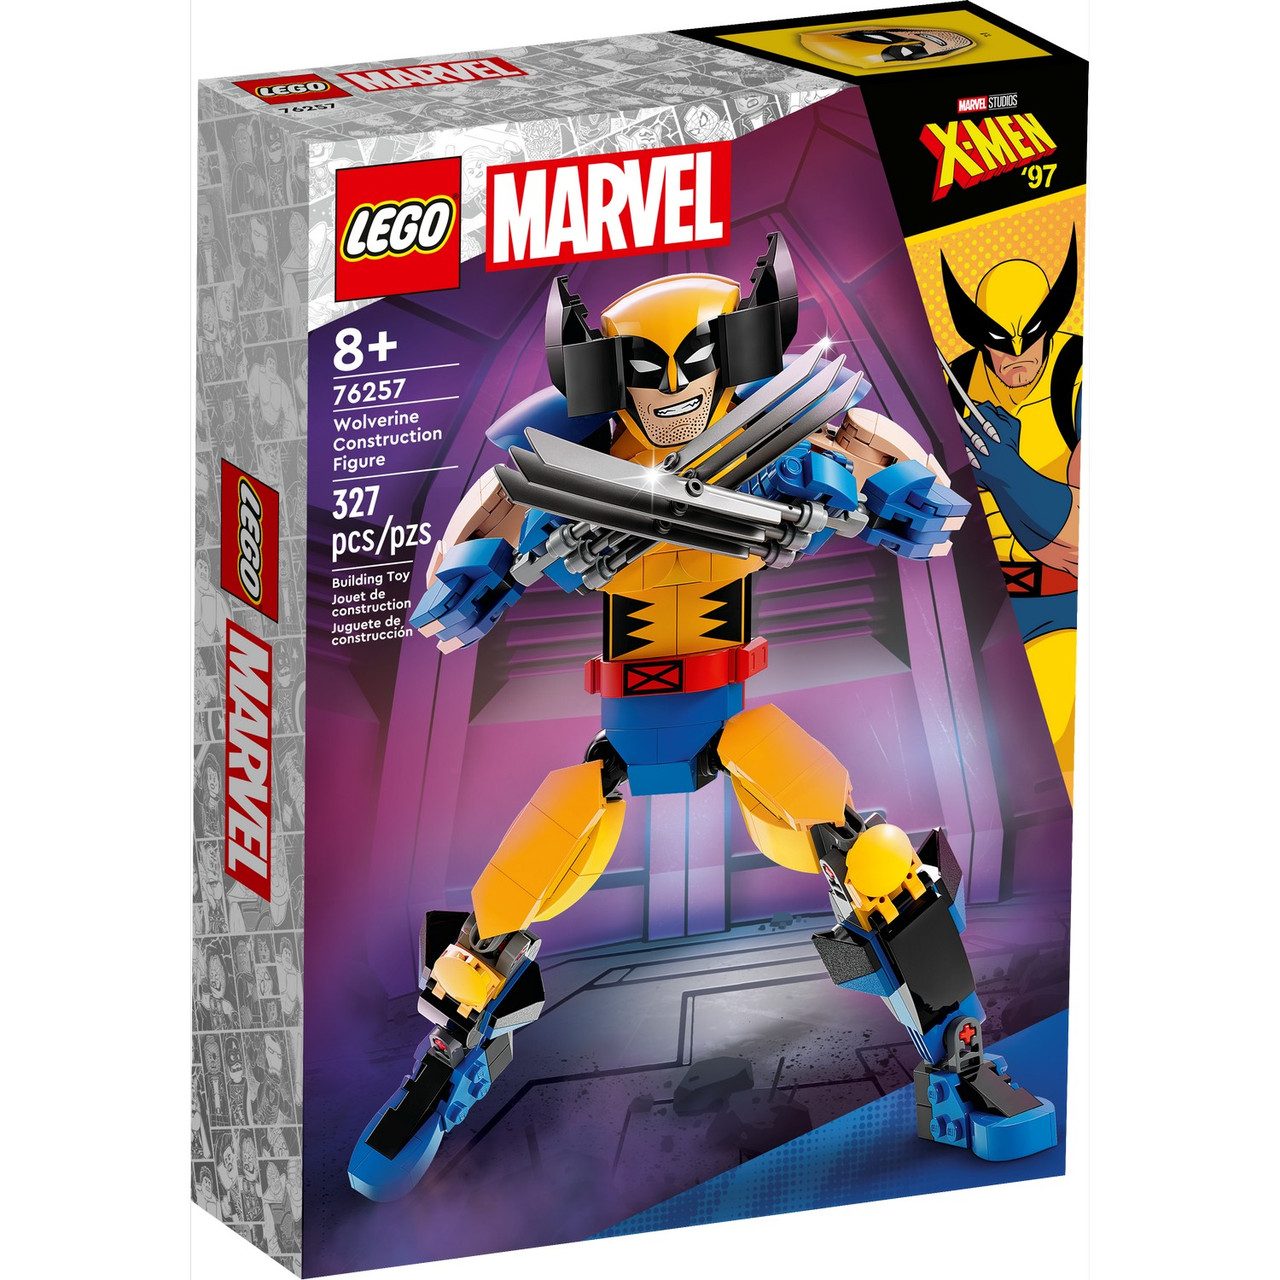 76257 Lego Super Heroes Строительная фигурка Росомахи, Лего Супергерои Marvel